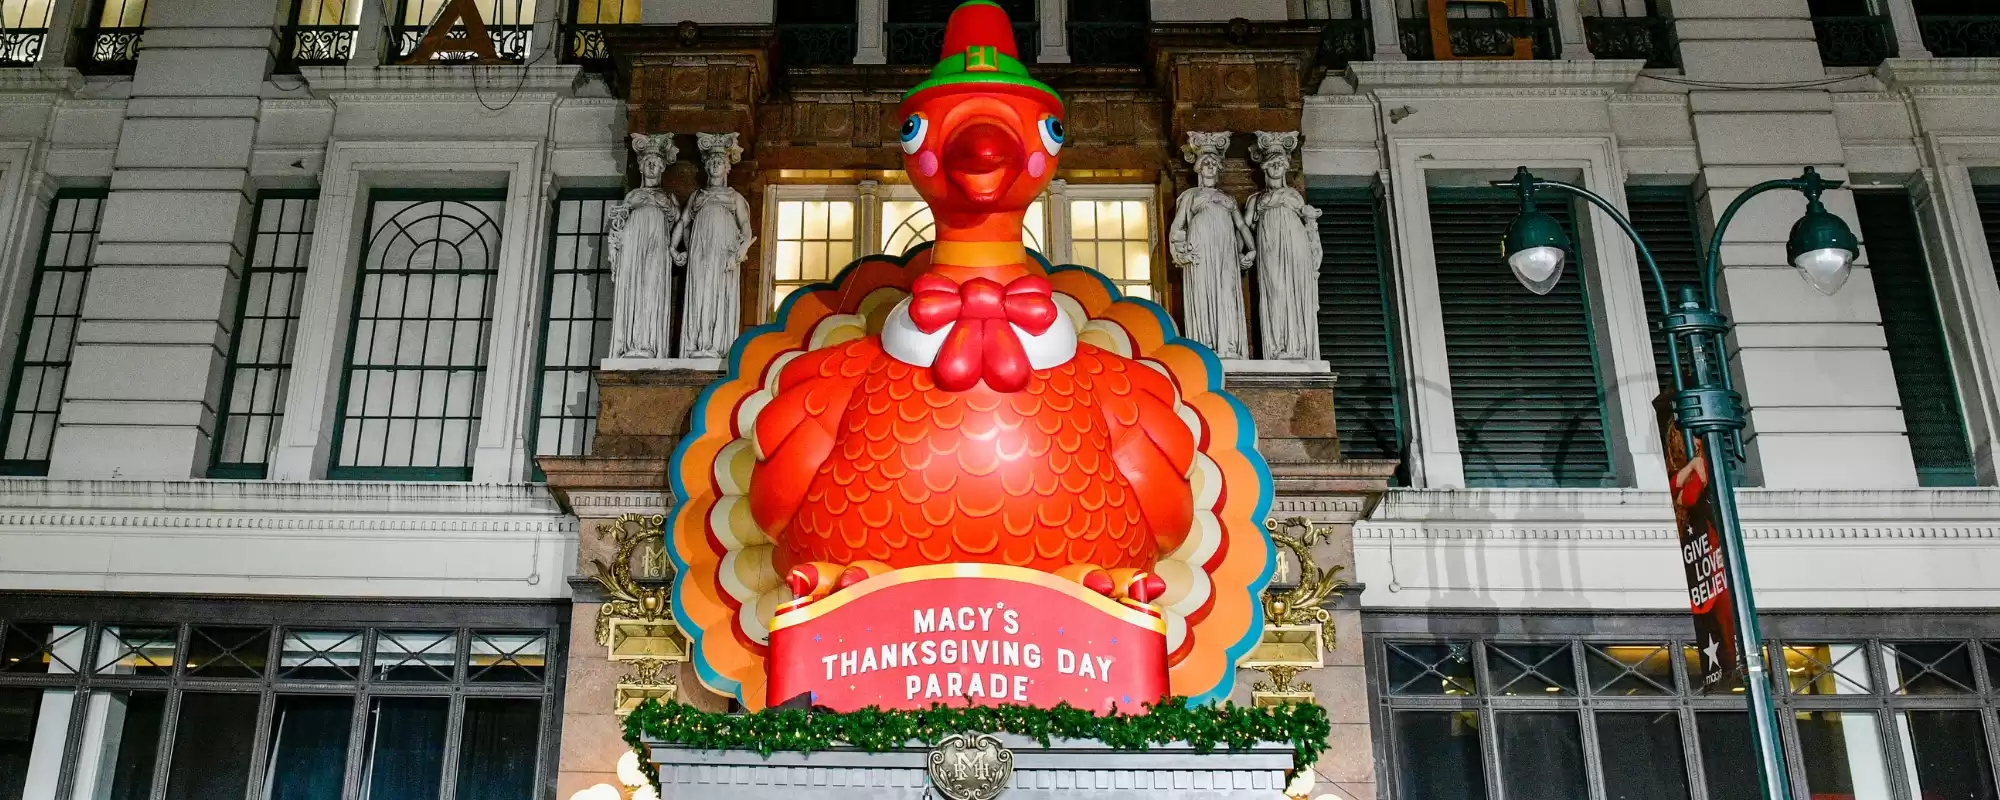 Fanáticos enojados reaccionan a los artistas que sincronizan los labios con el desfile del Día de Acción de Gracias de Macy's